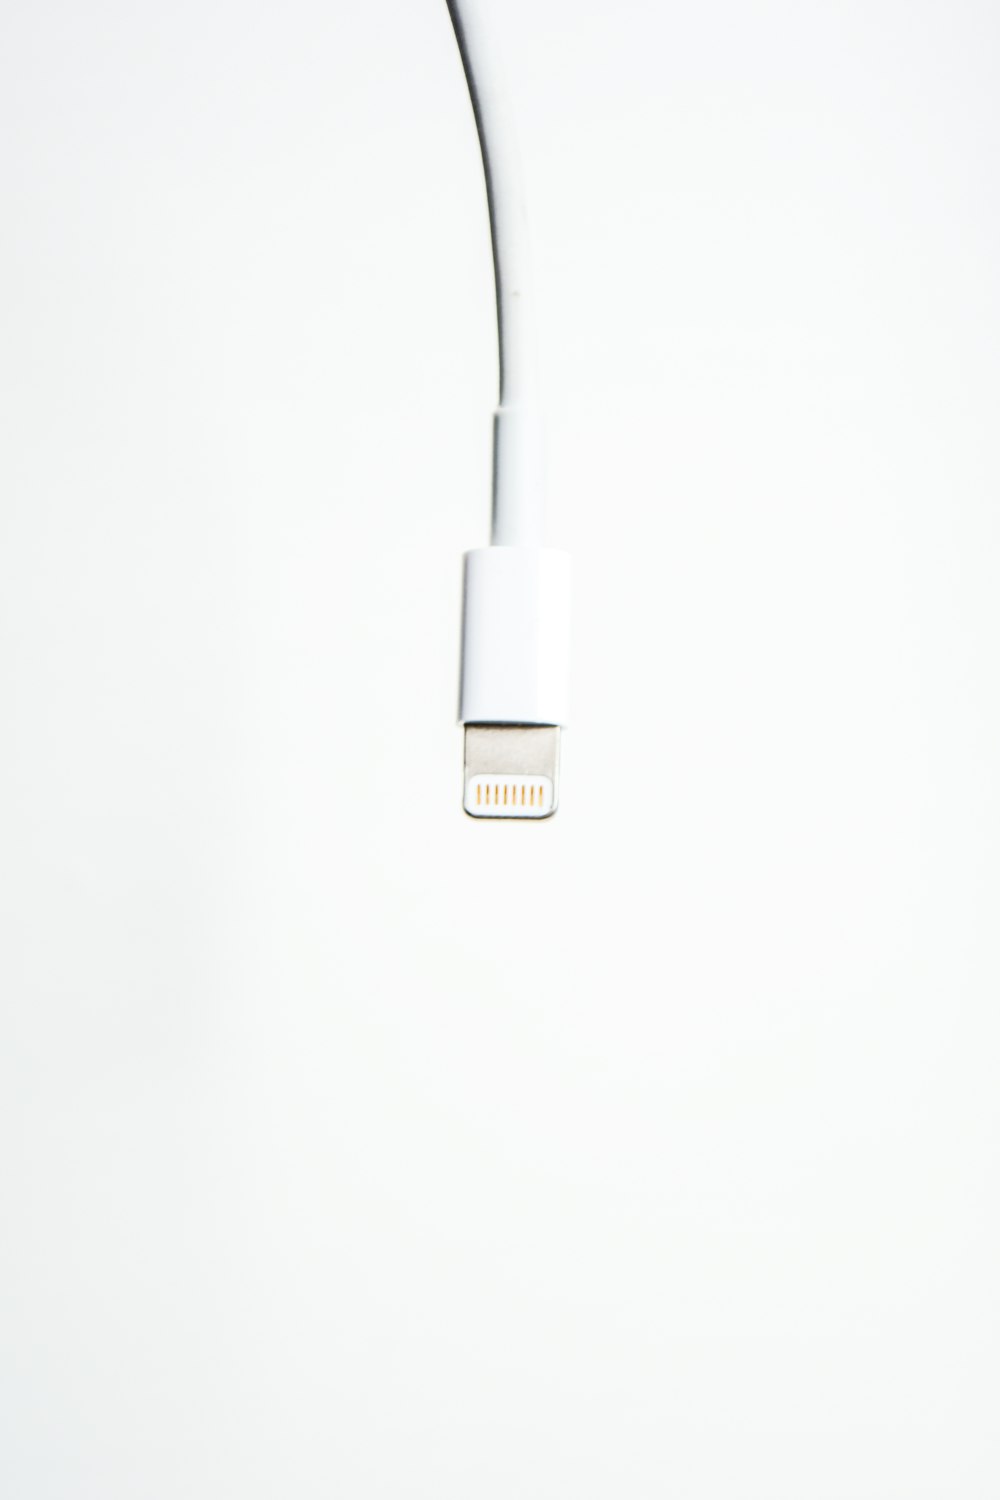 Cable de iPhone